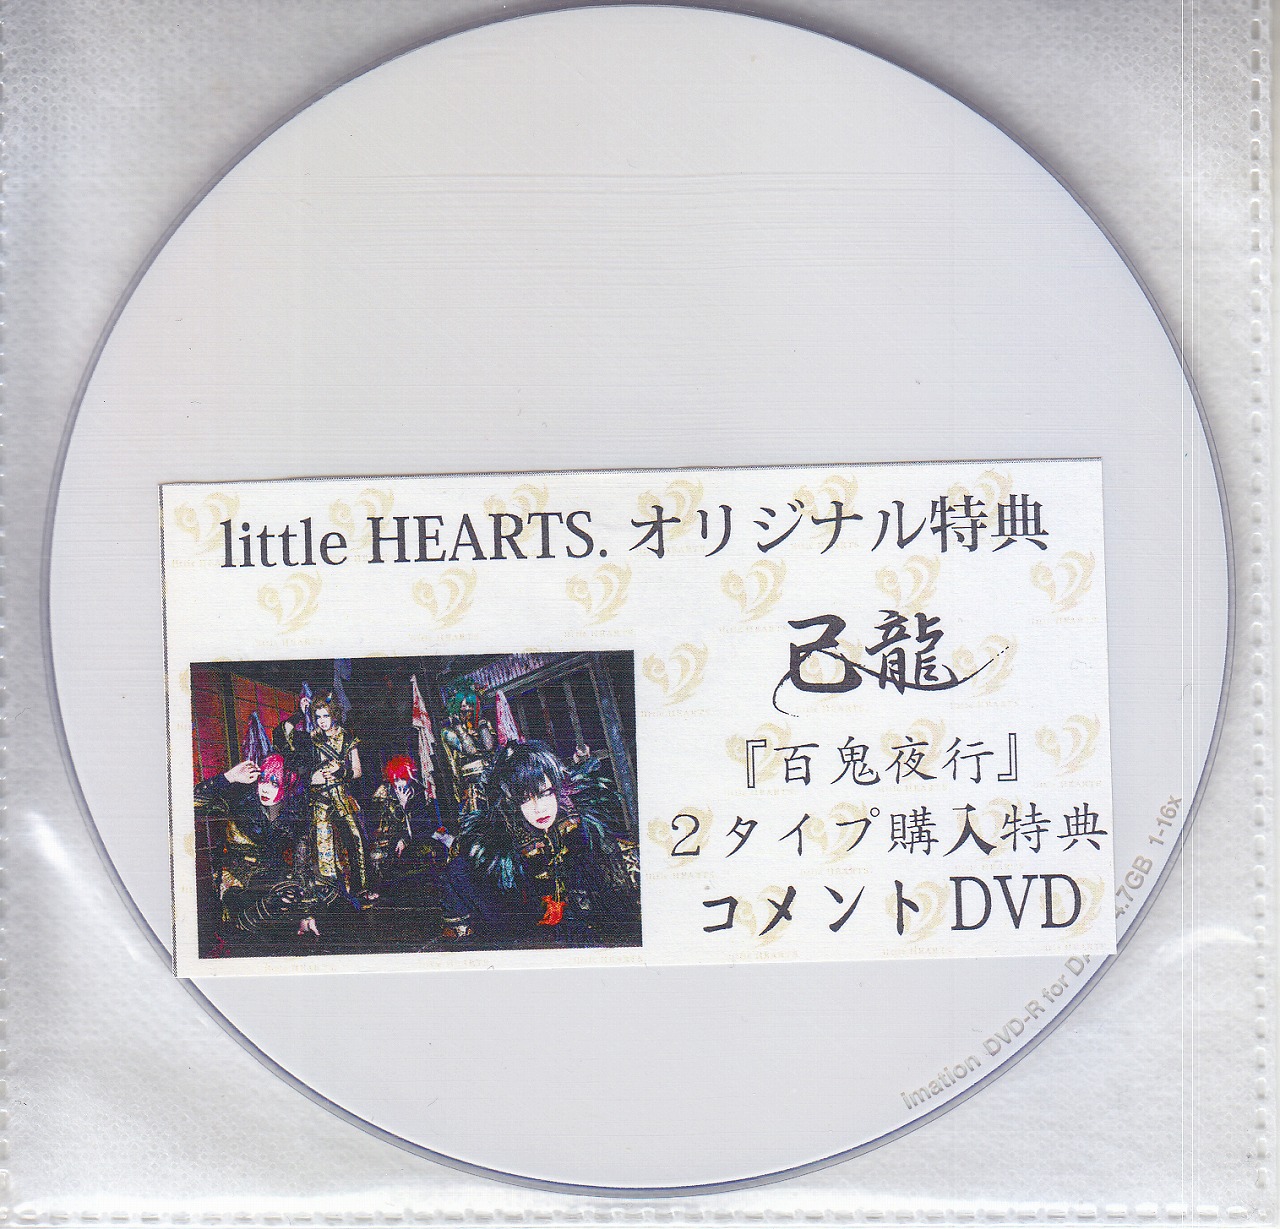 己龍 ( キリュウ )  の DVD 【little HEARTS.】百鬼夜行 2タイプ購入特典lp麺とDVD